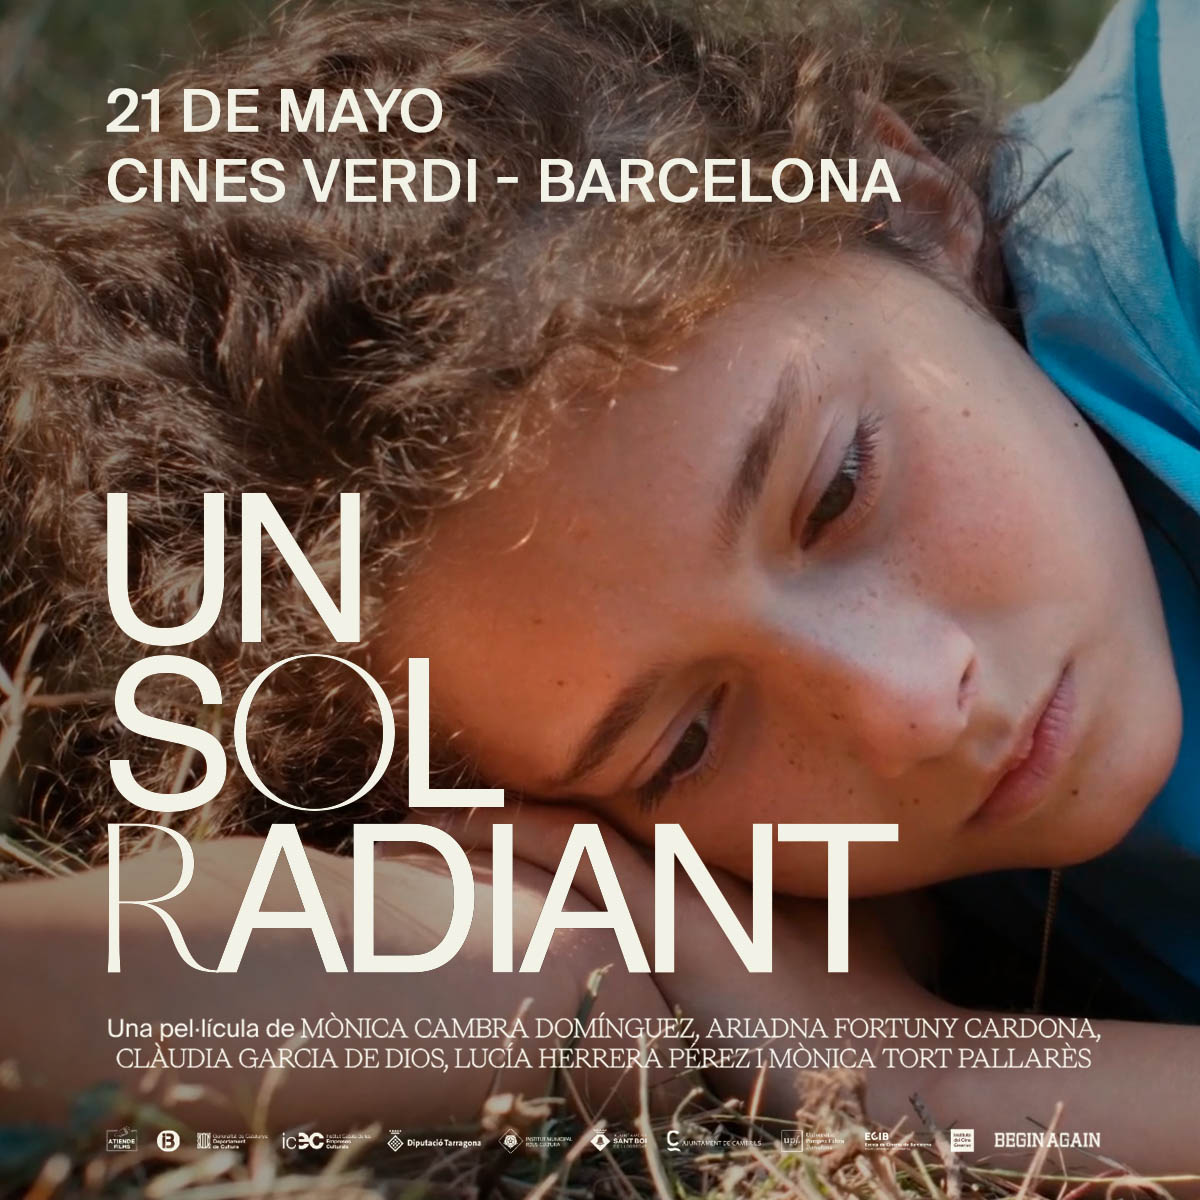 Hola, Barcelona UN SOL RADIANT te espera el 21 de mayo en @cinesverdibcn con una proyección con el equipo de la película. Info: facebook.com/events/1466115… UN SOL RADIANT. Una luminosa ópera prima sobre el fin del mundo Estreno en cines 17 de mayo. #UnSolRadiant @atiendefilms